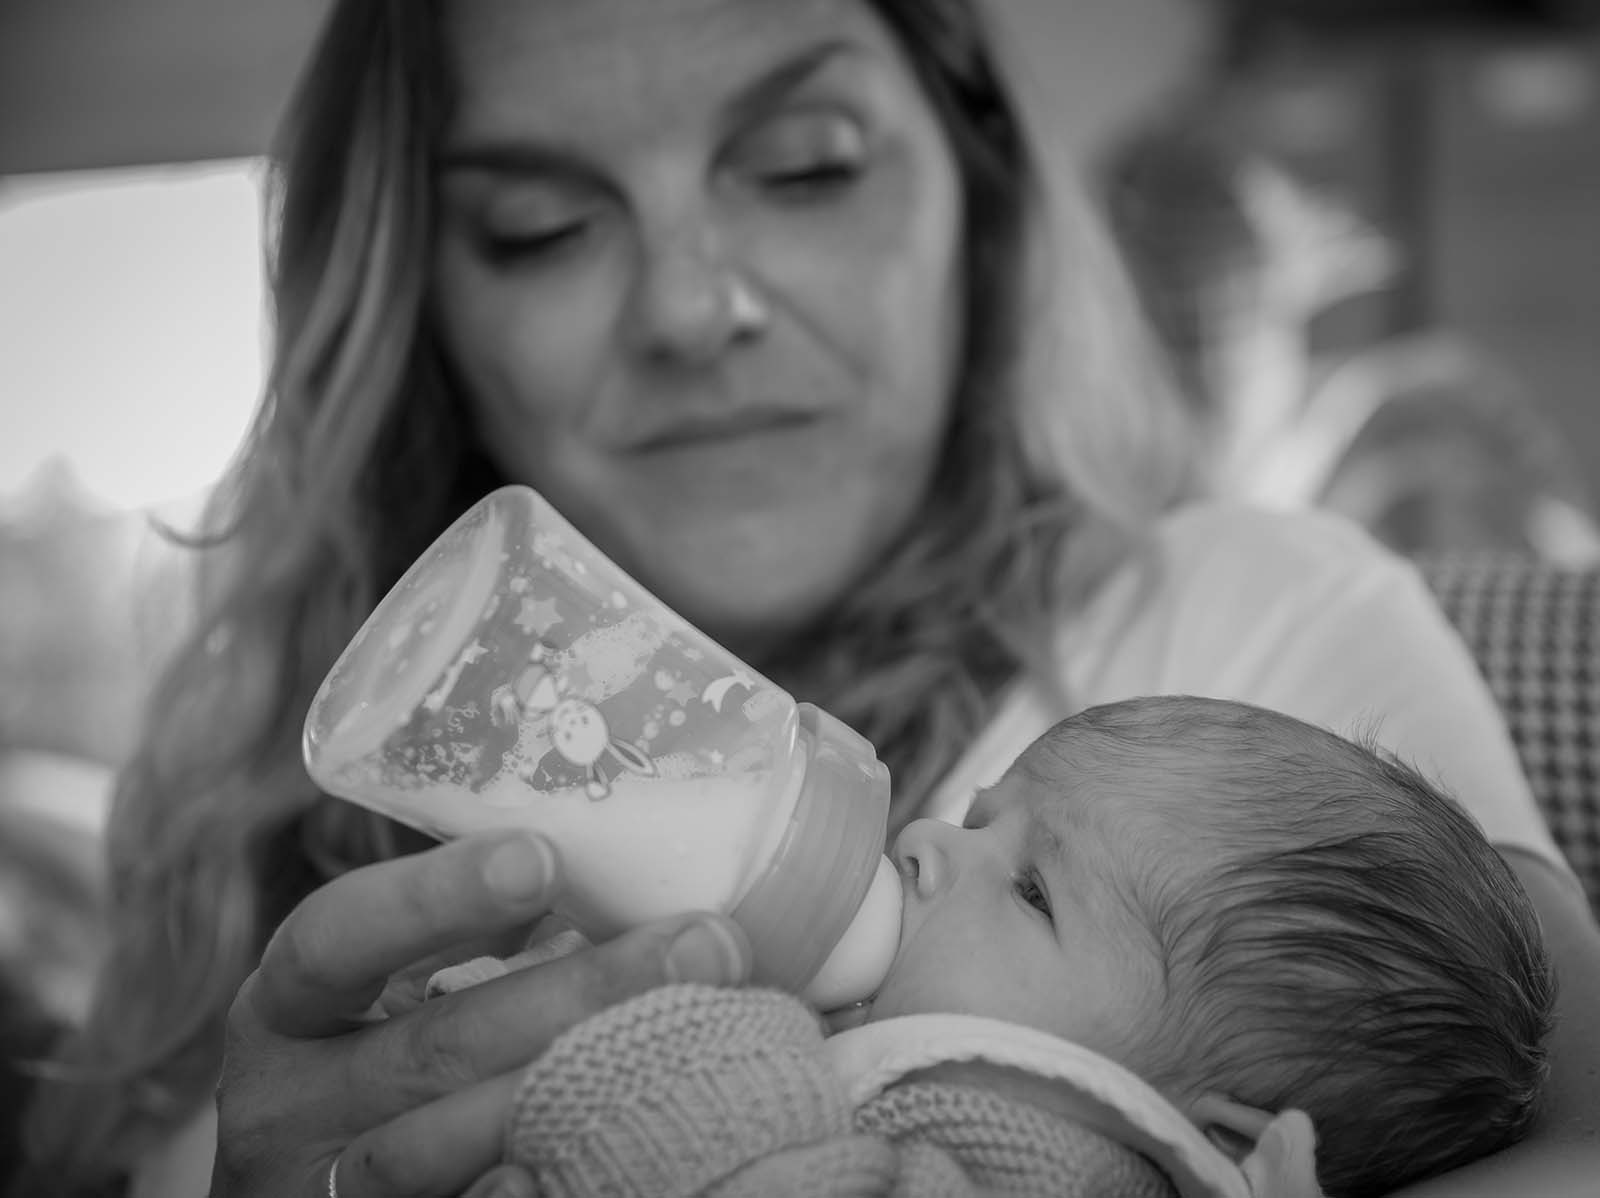 photographie noir et blanche d'une femme donnant le biberon a un bébé